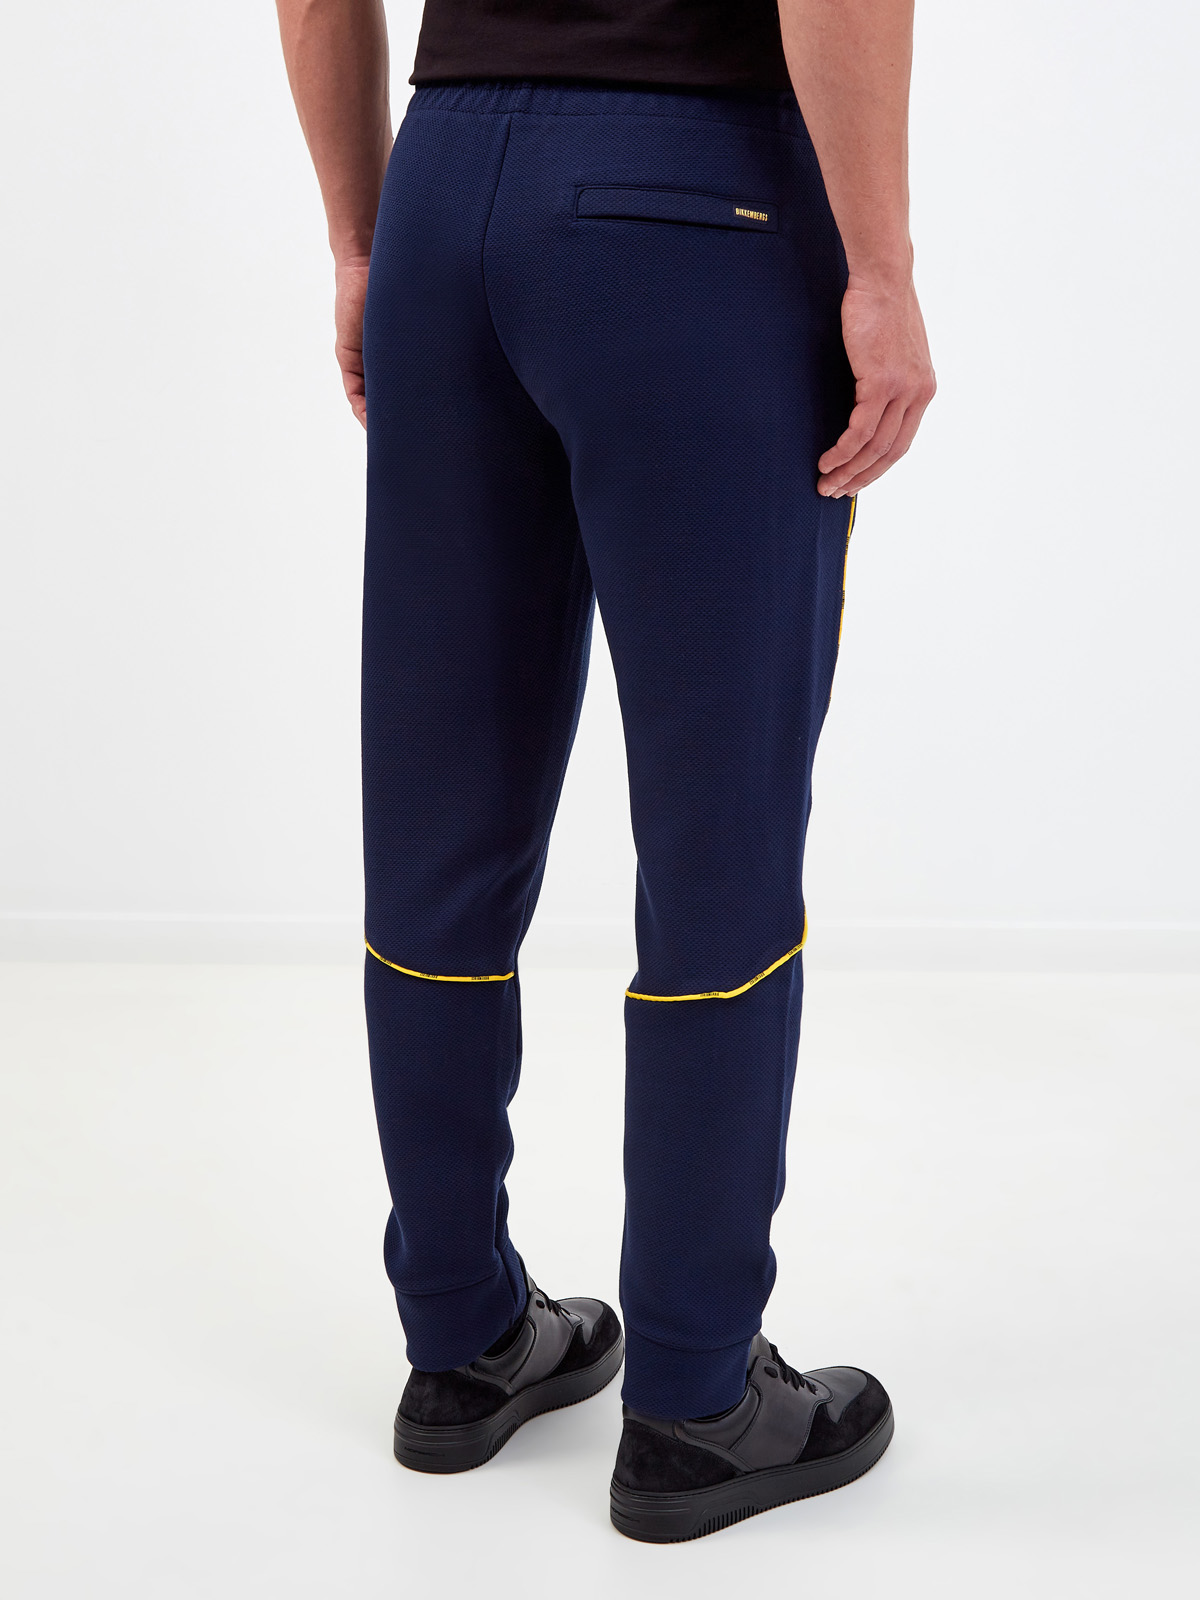 Спортивные брюки с контрастной окантовкой и логотипом BIKKEMBERGS, цвет синий, размер S;M;L;XL;2XL;3XL - фото 4